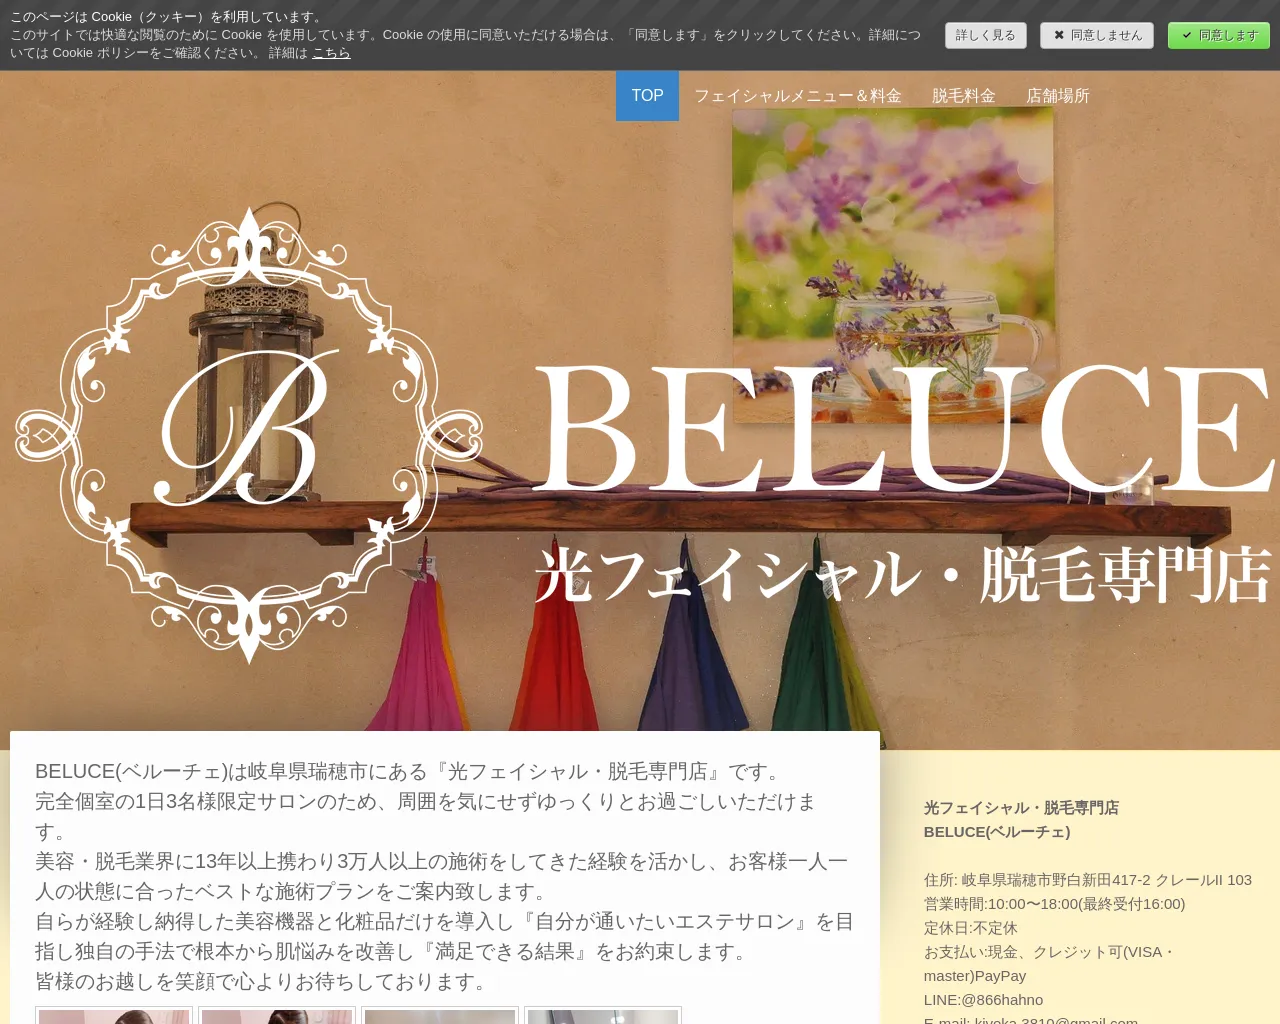 BELUCE(ベルーチェ)光フェイシャル・ハーブピーリング・脱毛専門店 site